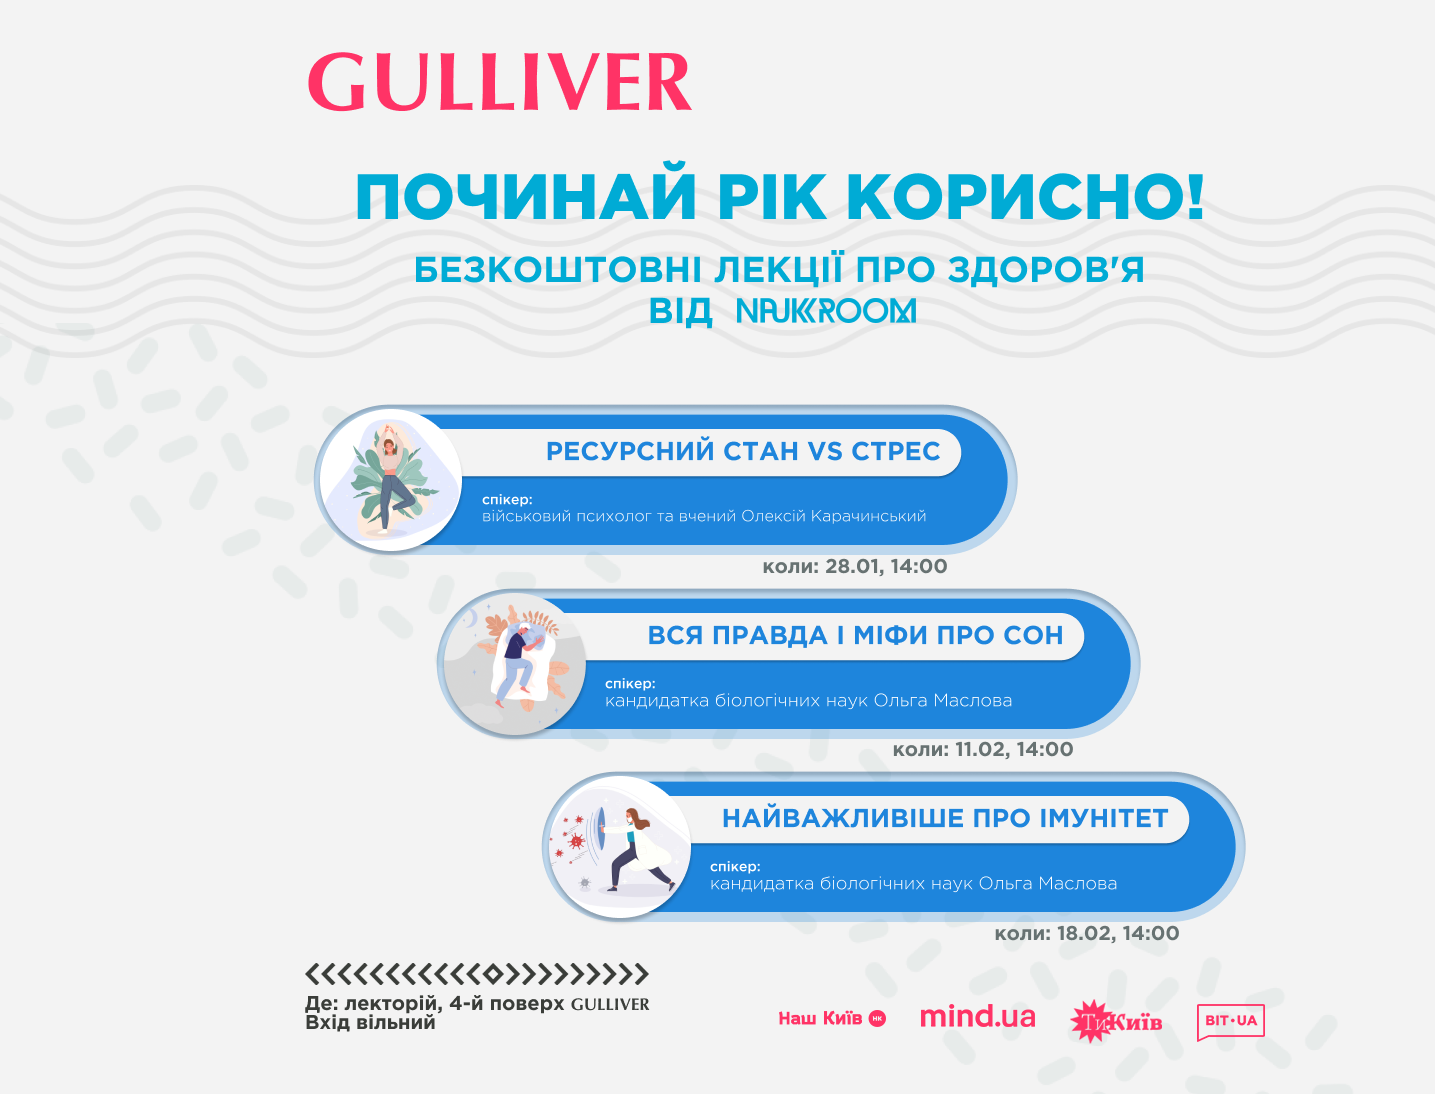 У ТРЦ Gulliver пройдуть безкоштовні лекції про здоров’я